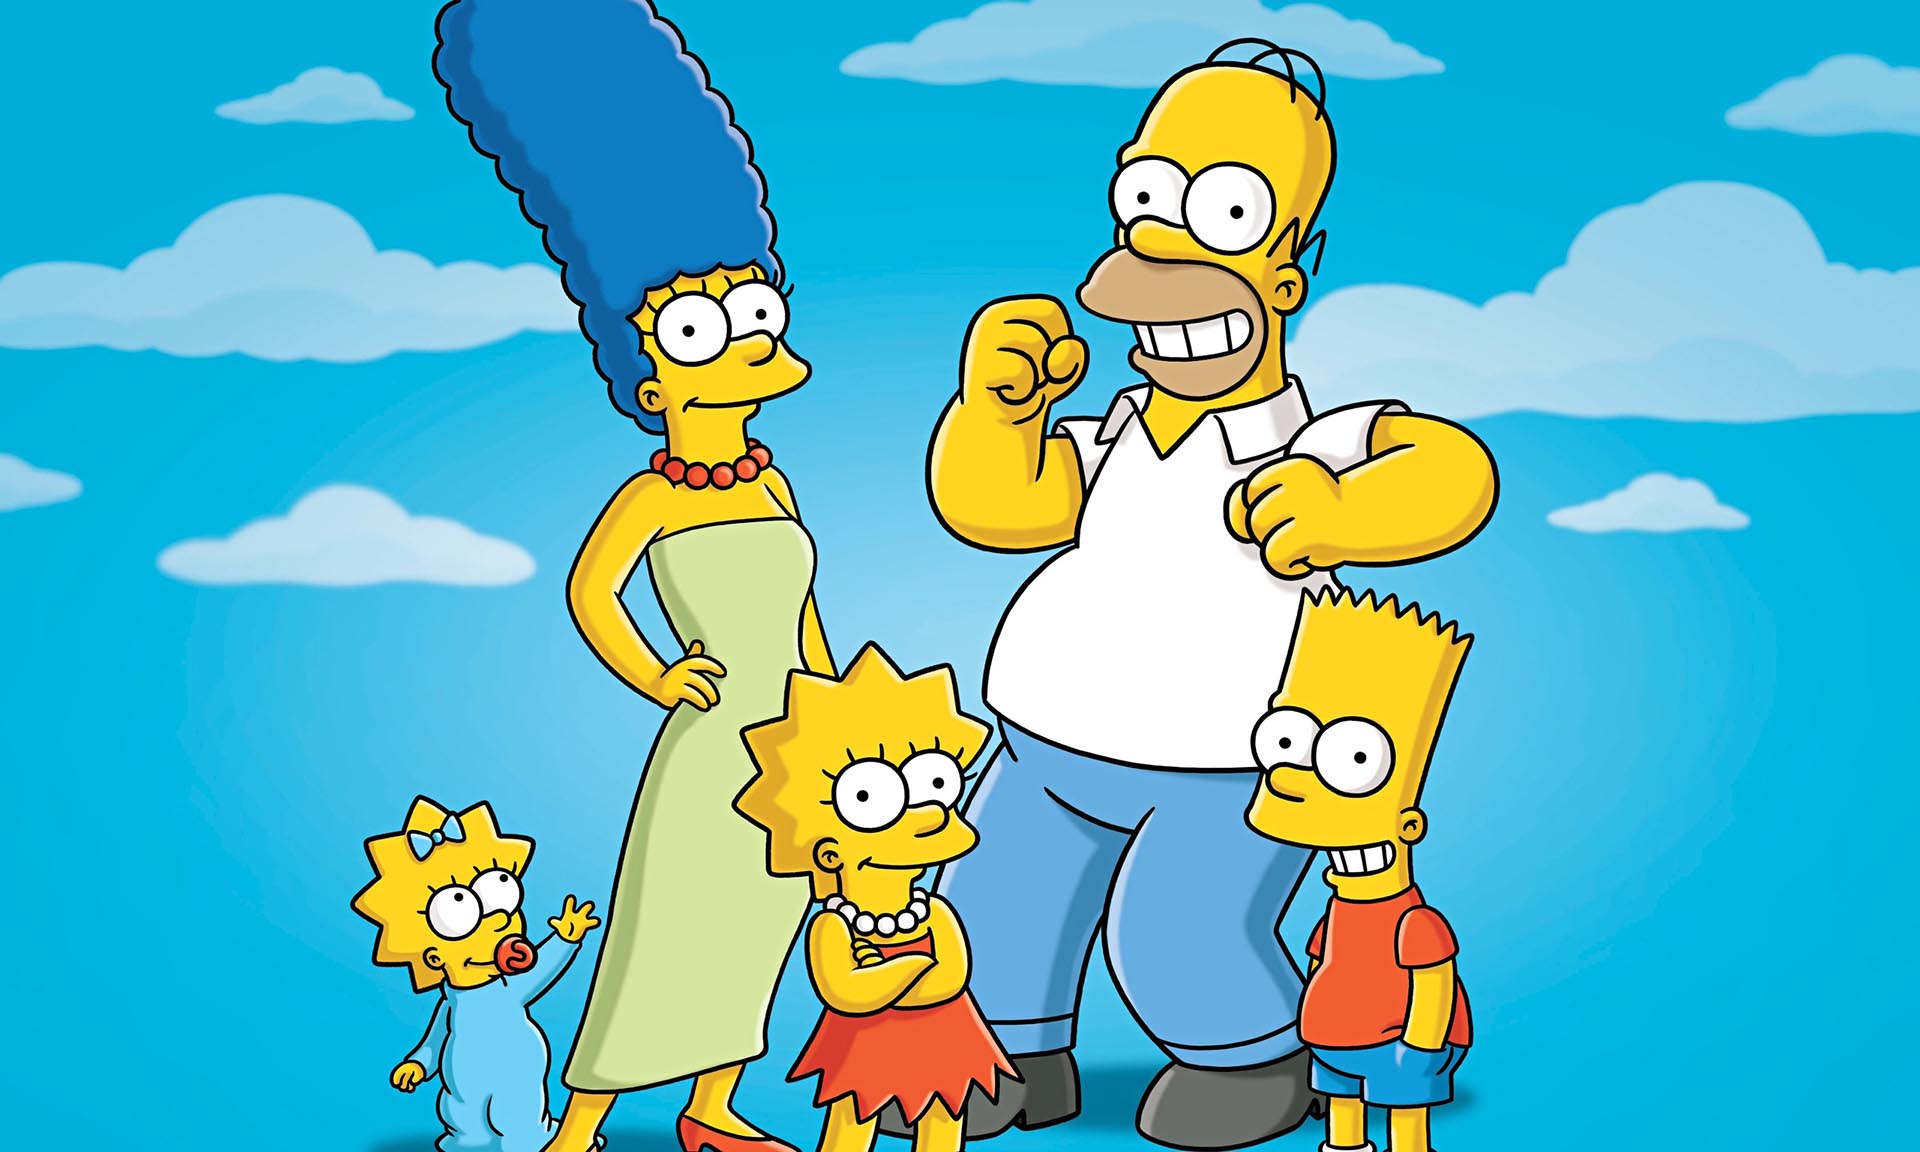 Los Simpsons es una serie animada creada por Matt Groening para Fox 